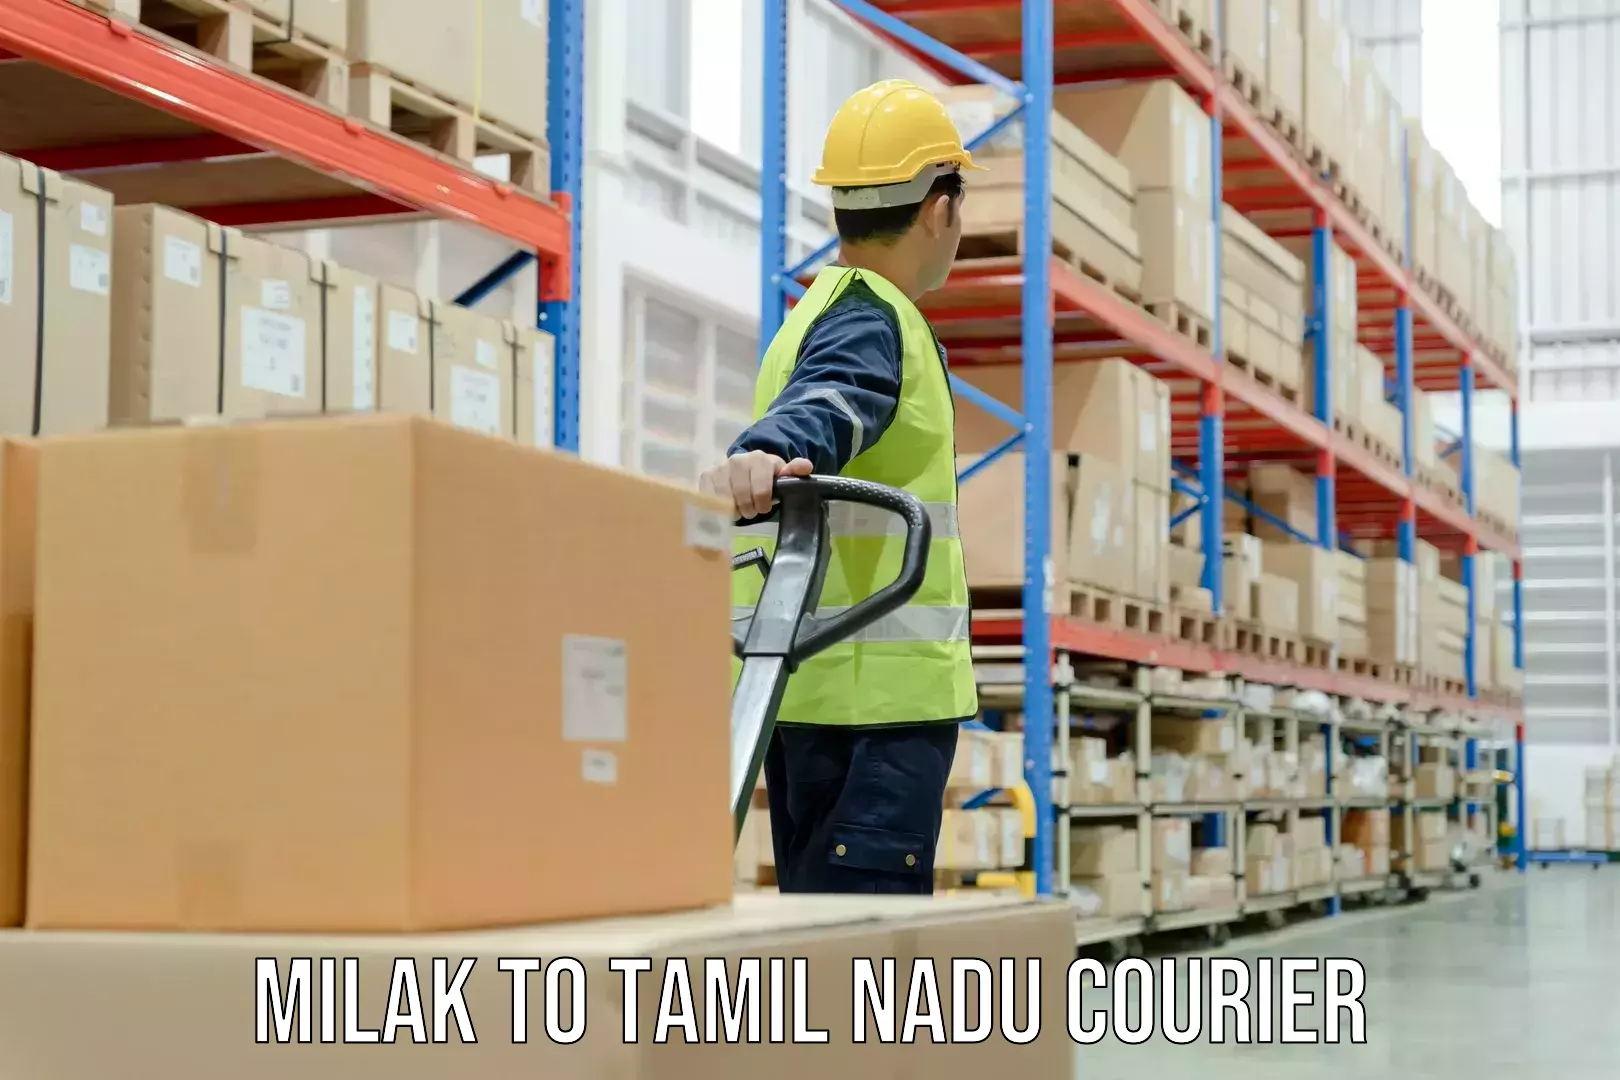 User-friendly courier app Milak to Tiruvallur